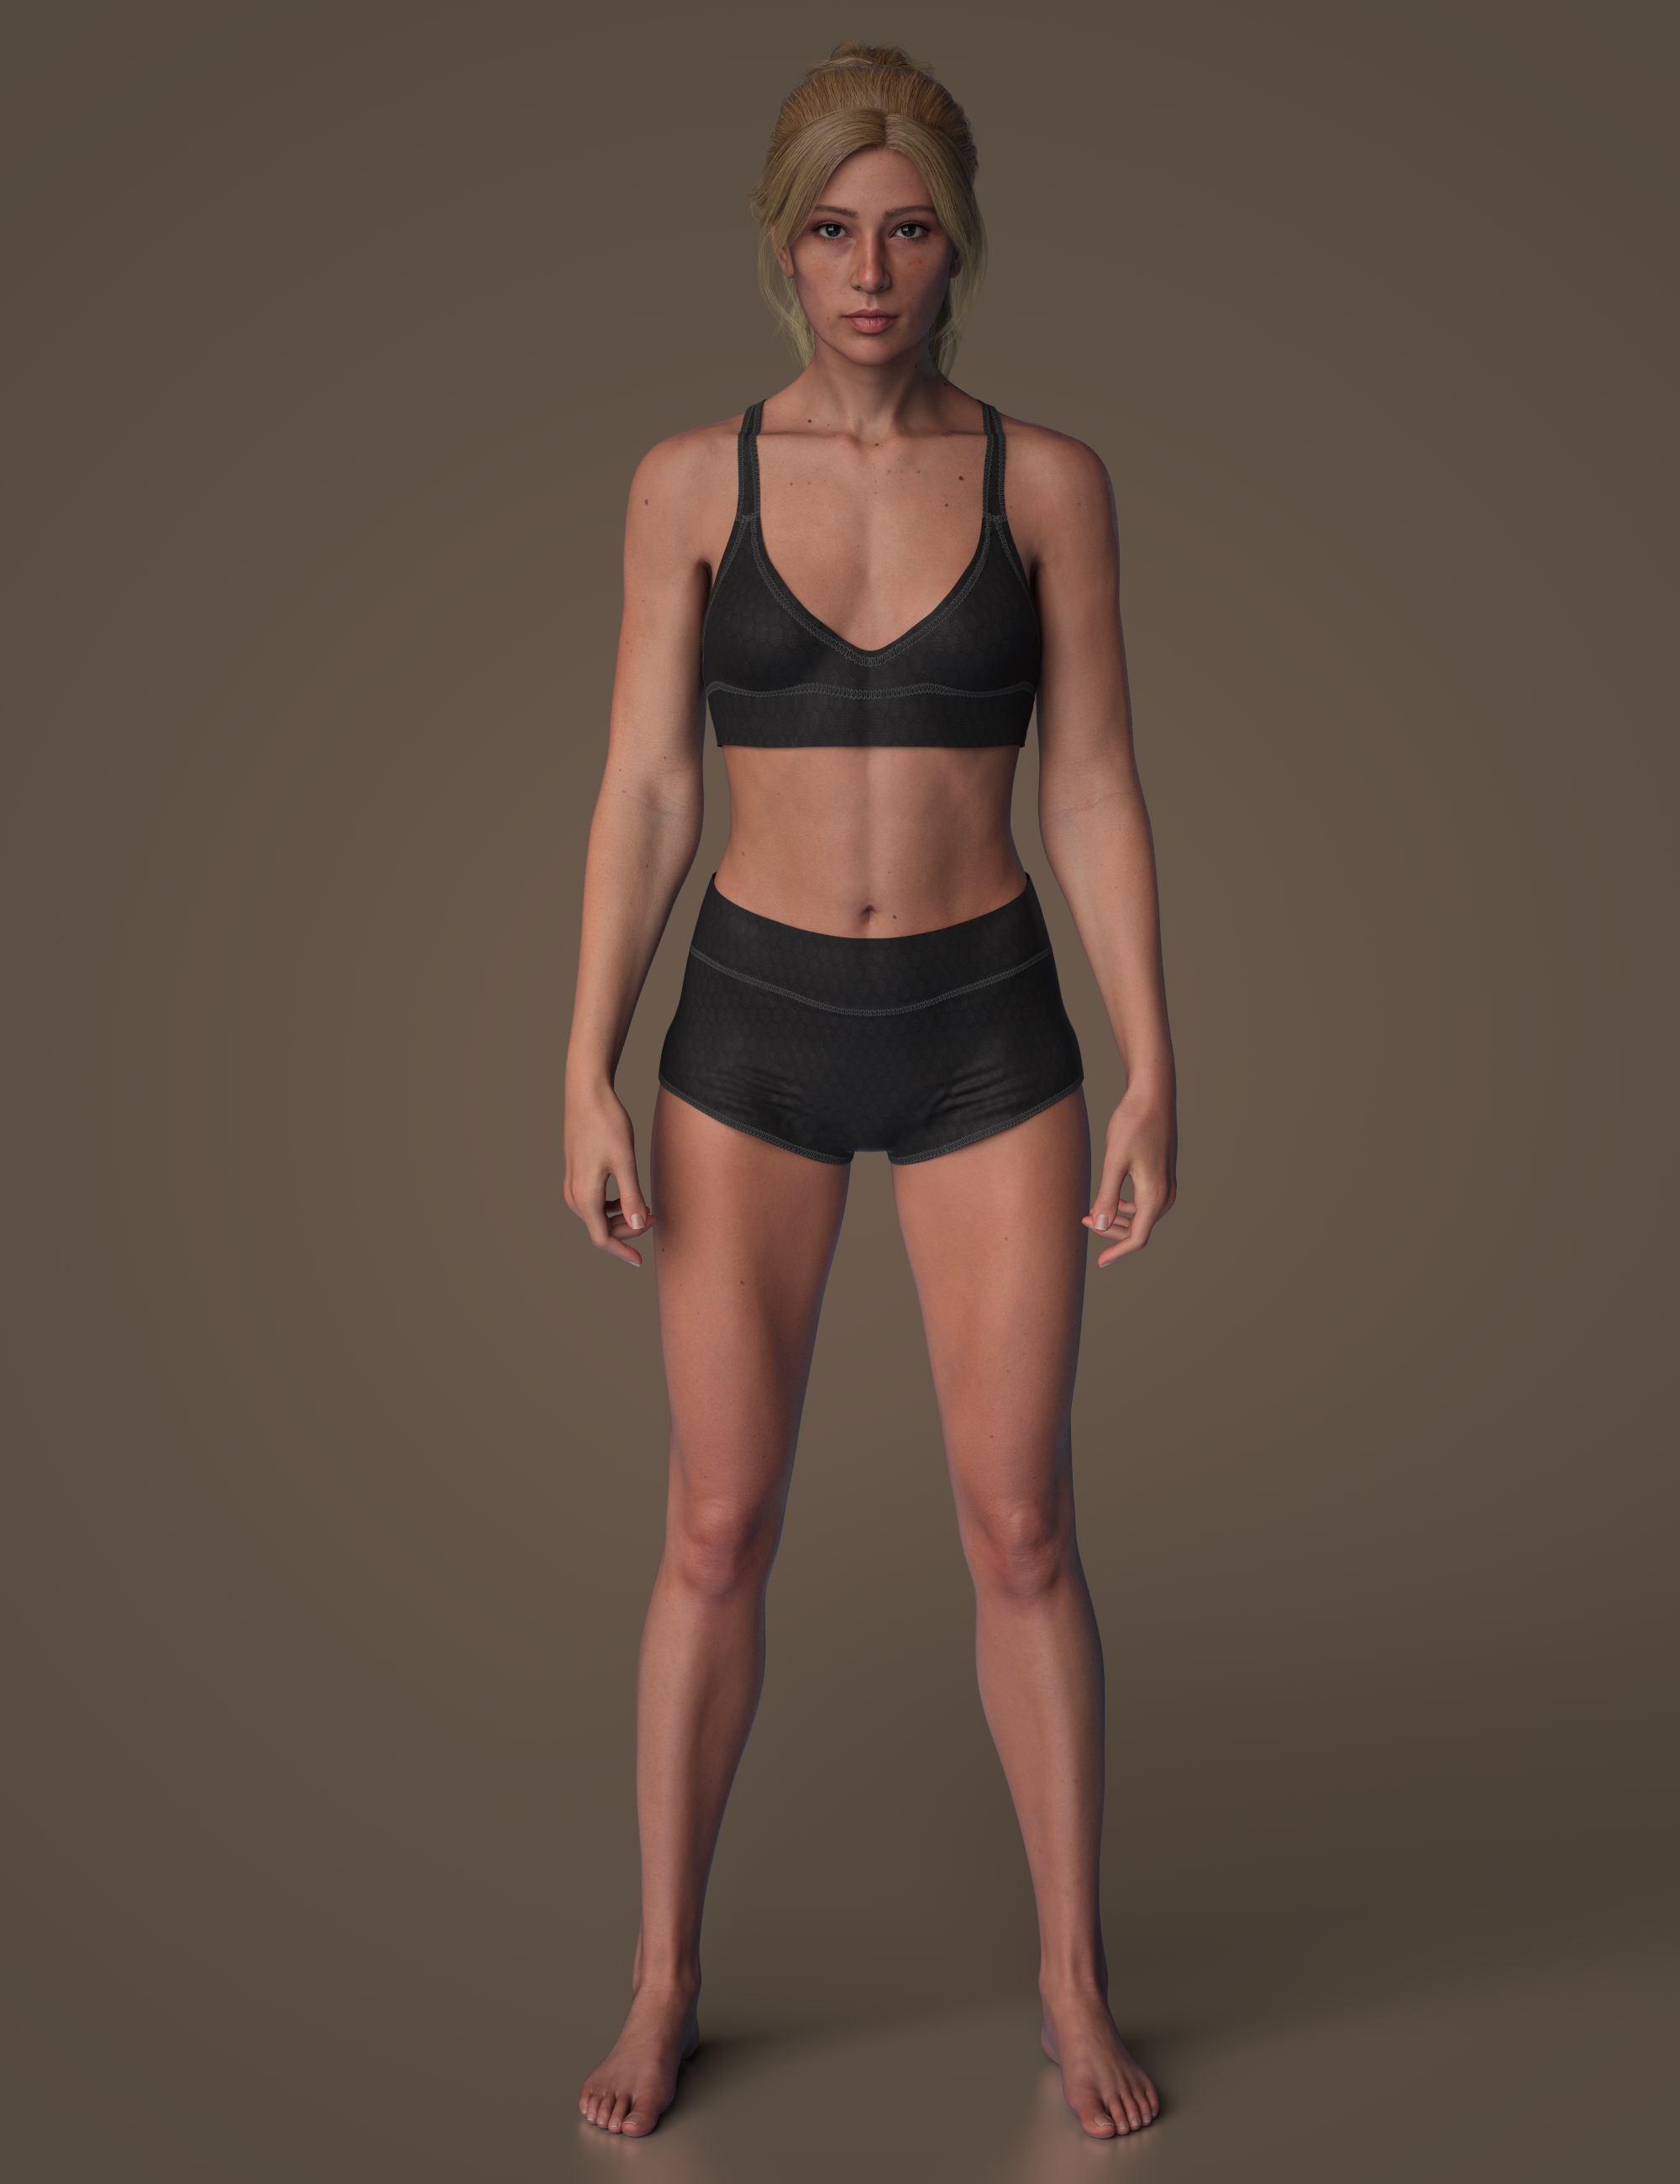 Sophia 9 Athletic Shape Add-On by: , 3D Models by Daz 3D